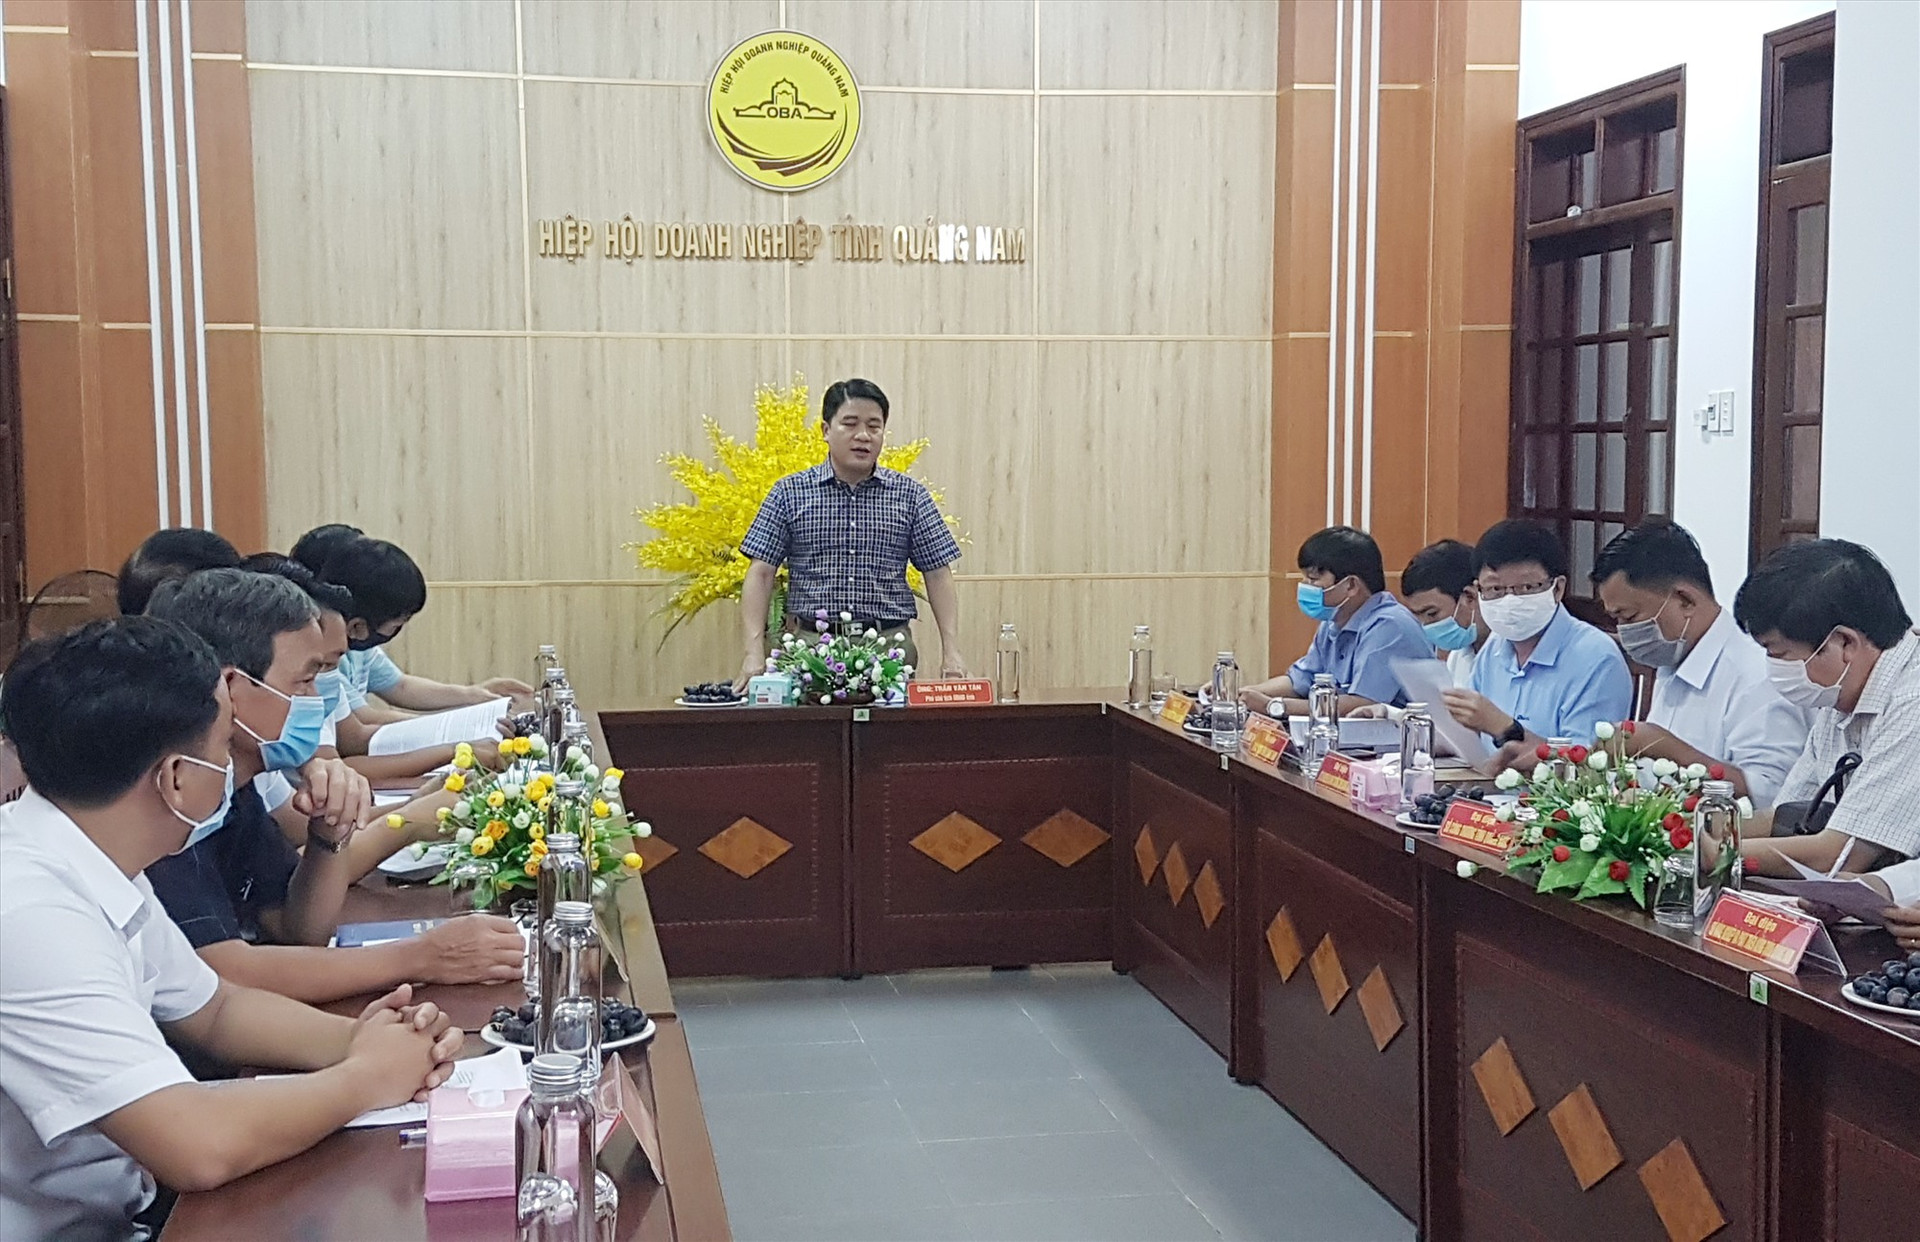 Phó Chủ tịch UBND tỉnh Trần Văn Tân chủ trì buổi tiếp doanh nghiệp định kỳ tháng 6.2021. Ảnh: D.L